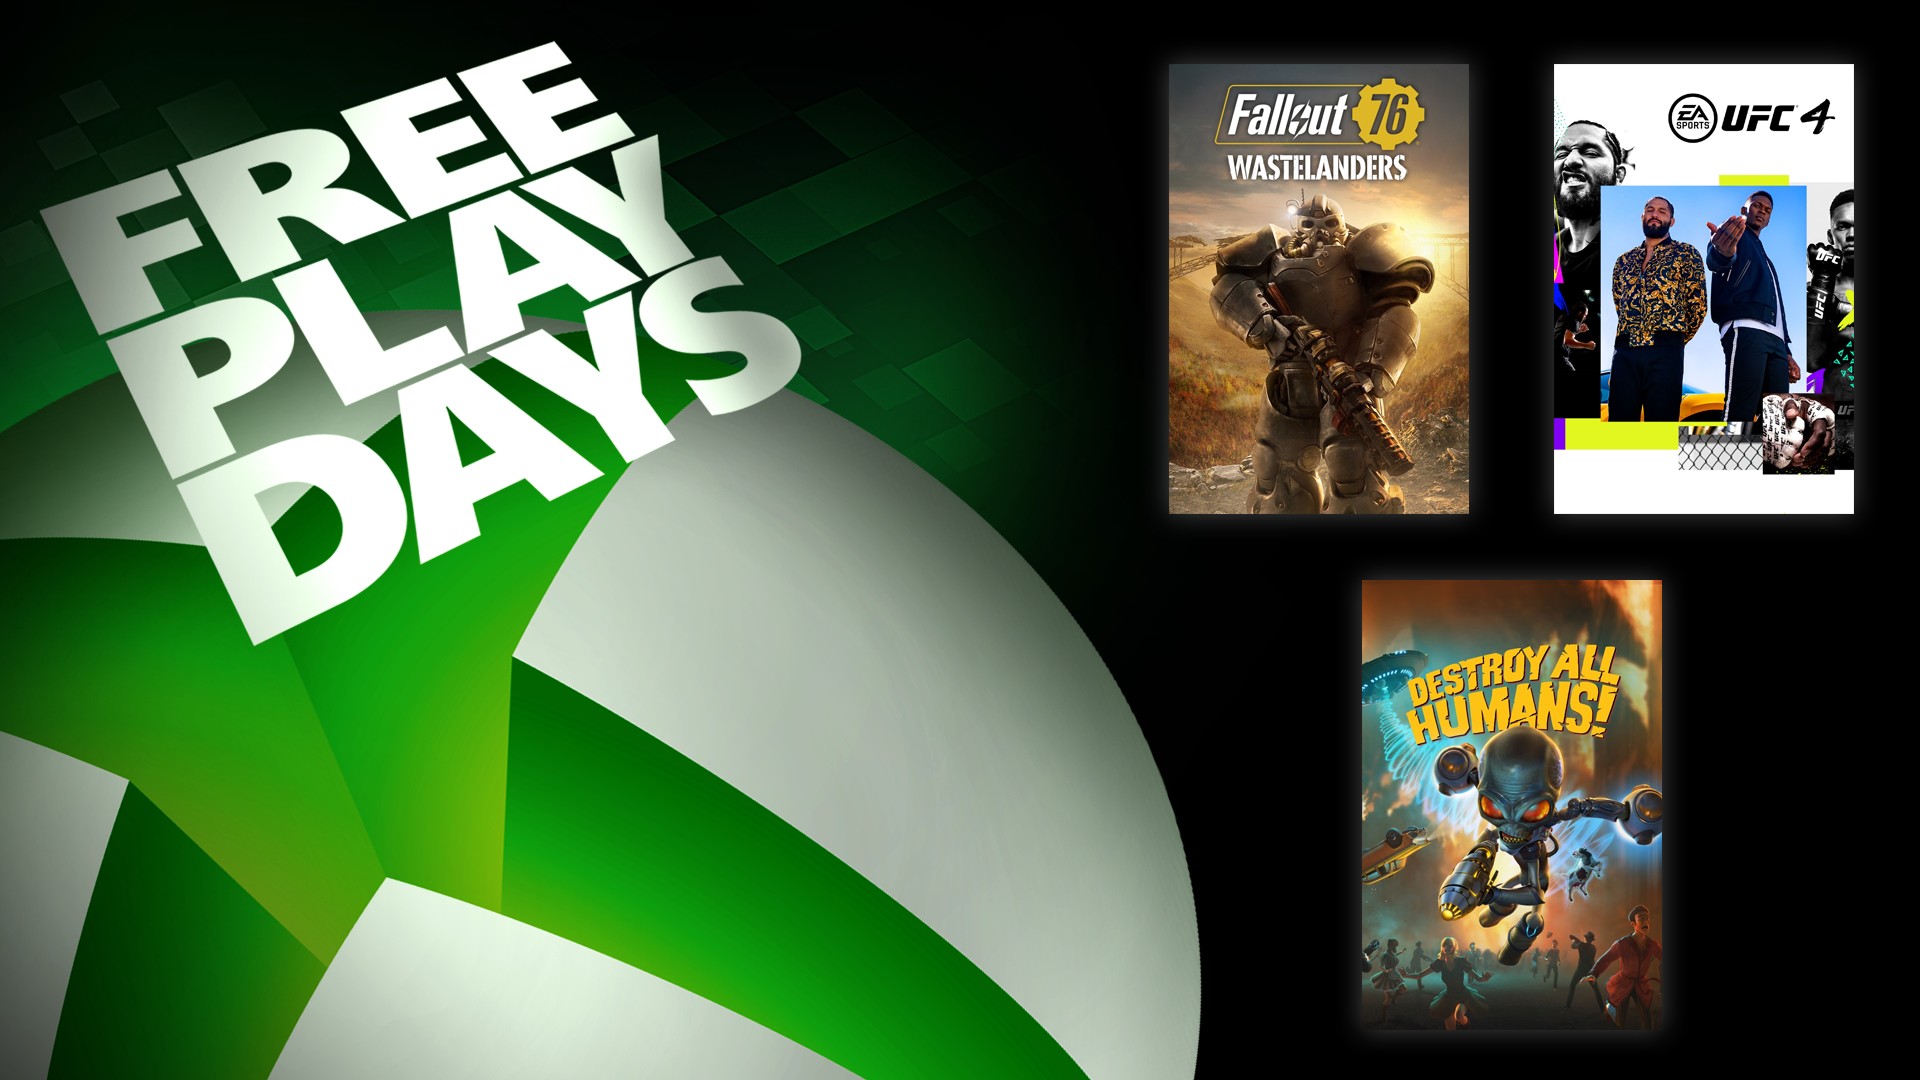 Заглавная поста про Дни бесплатной игры: с обложками Fallout 76, UFC 4 и Destroy All Humans